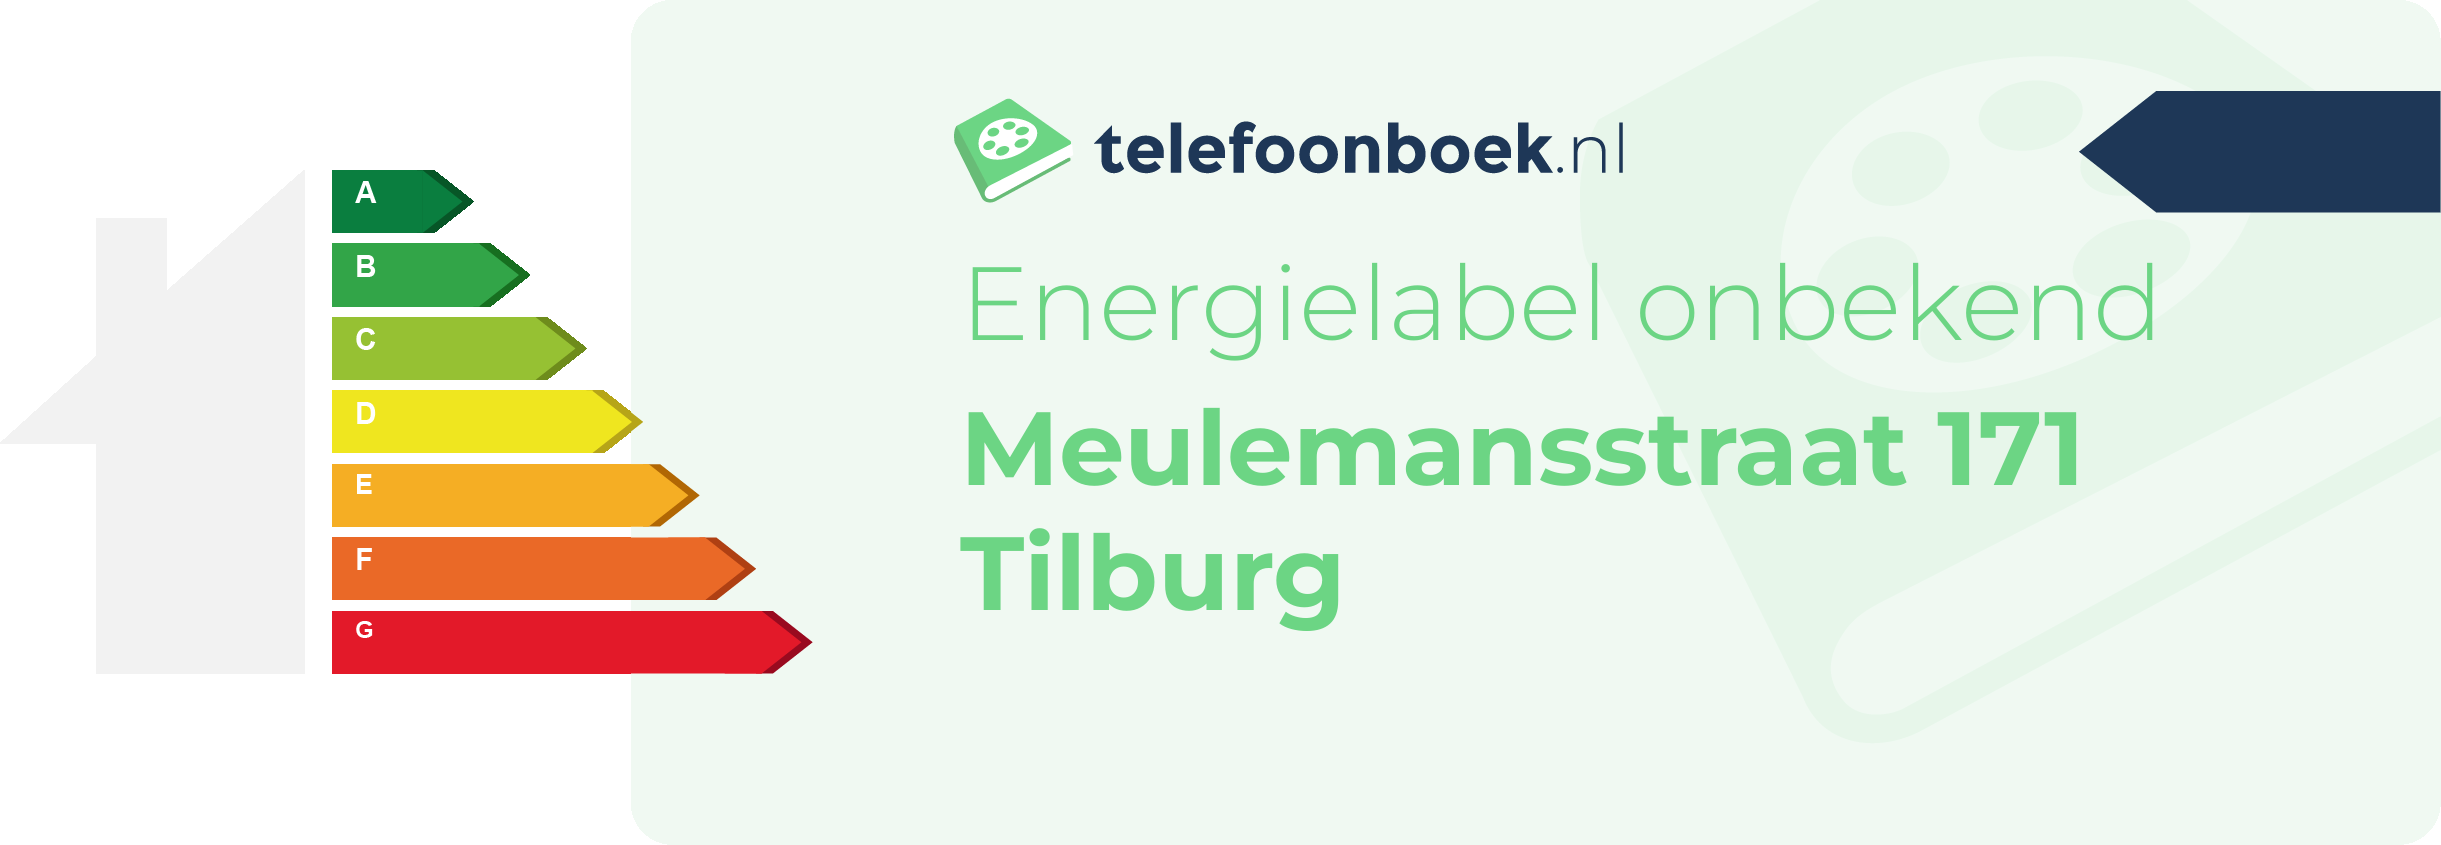 Energielabel Meulemansstraat 171 Tilburg